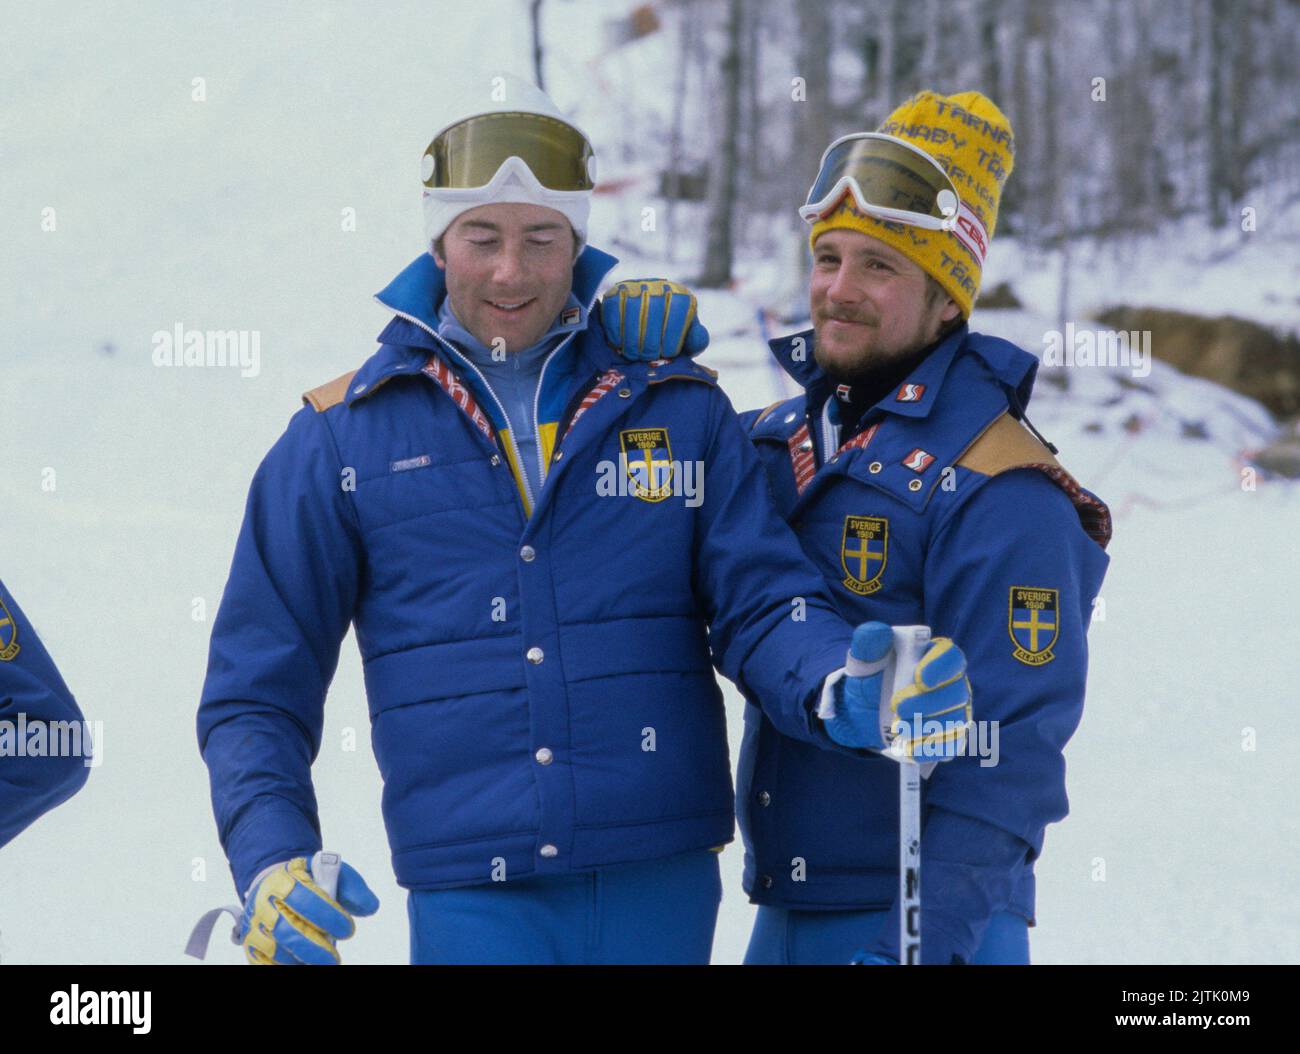 INGEMAR STENMARK y Stig Strand Suecos alpin esquiadores en los Juegos Olímpicos de Invierno en Lake Placid Foto de stock